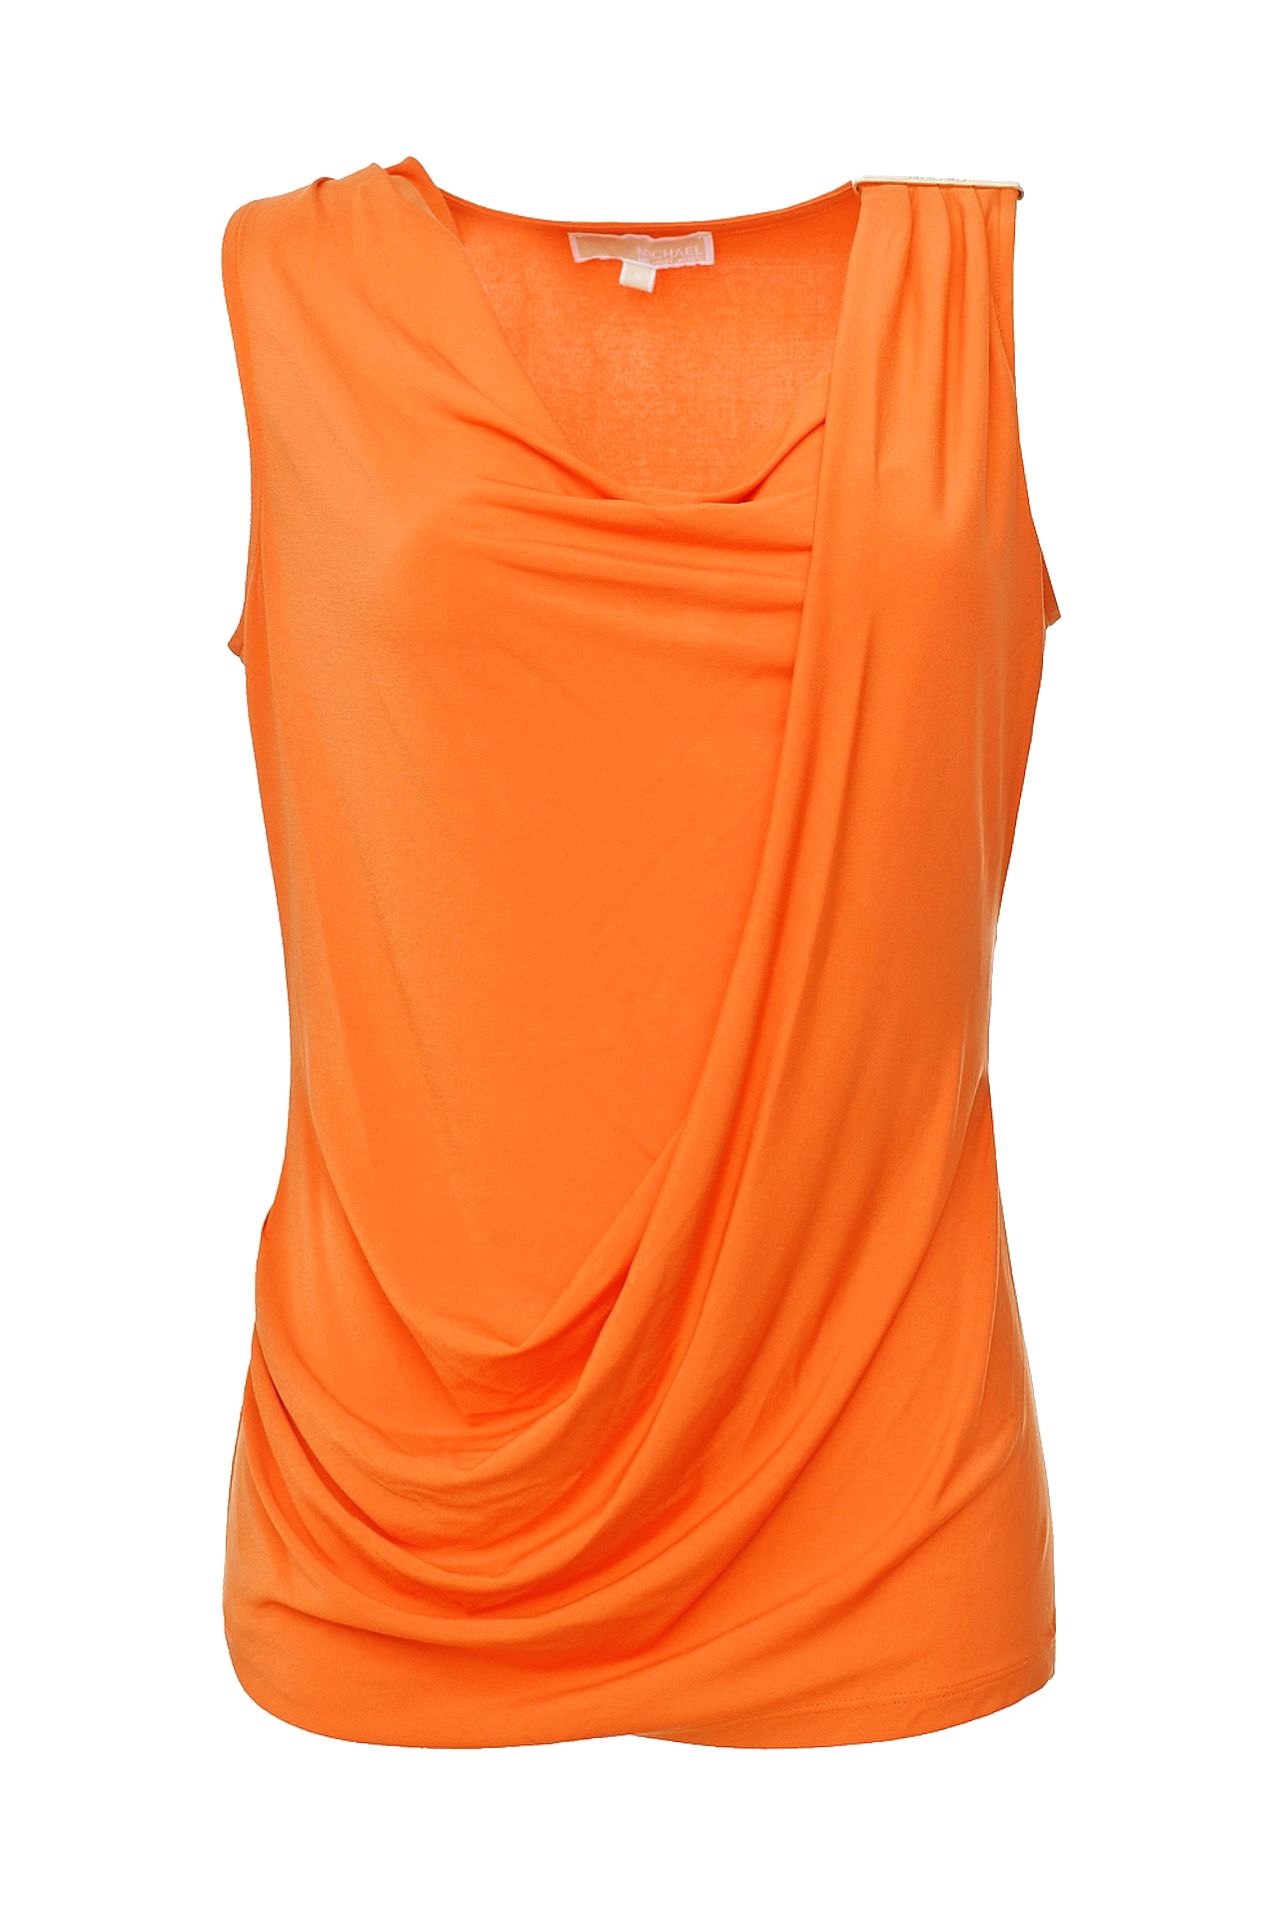 Одежда женская Топ MICHAEL MICHAEL KORS (MH35G52S32/14.2). Купить за 5940 руб.